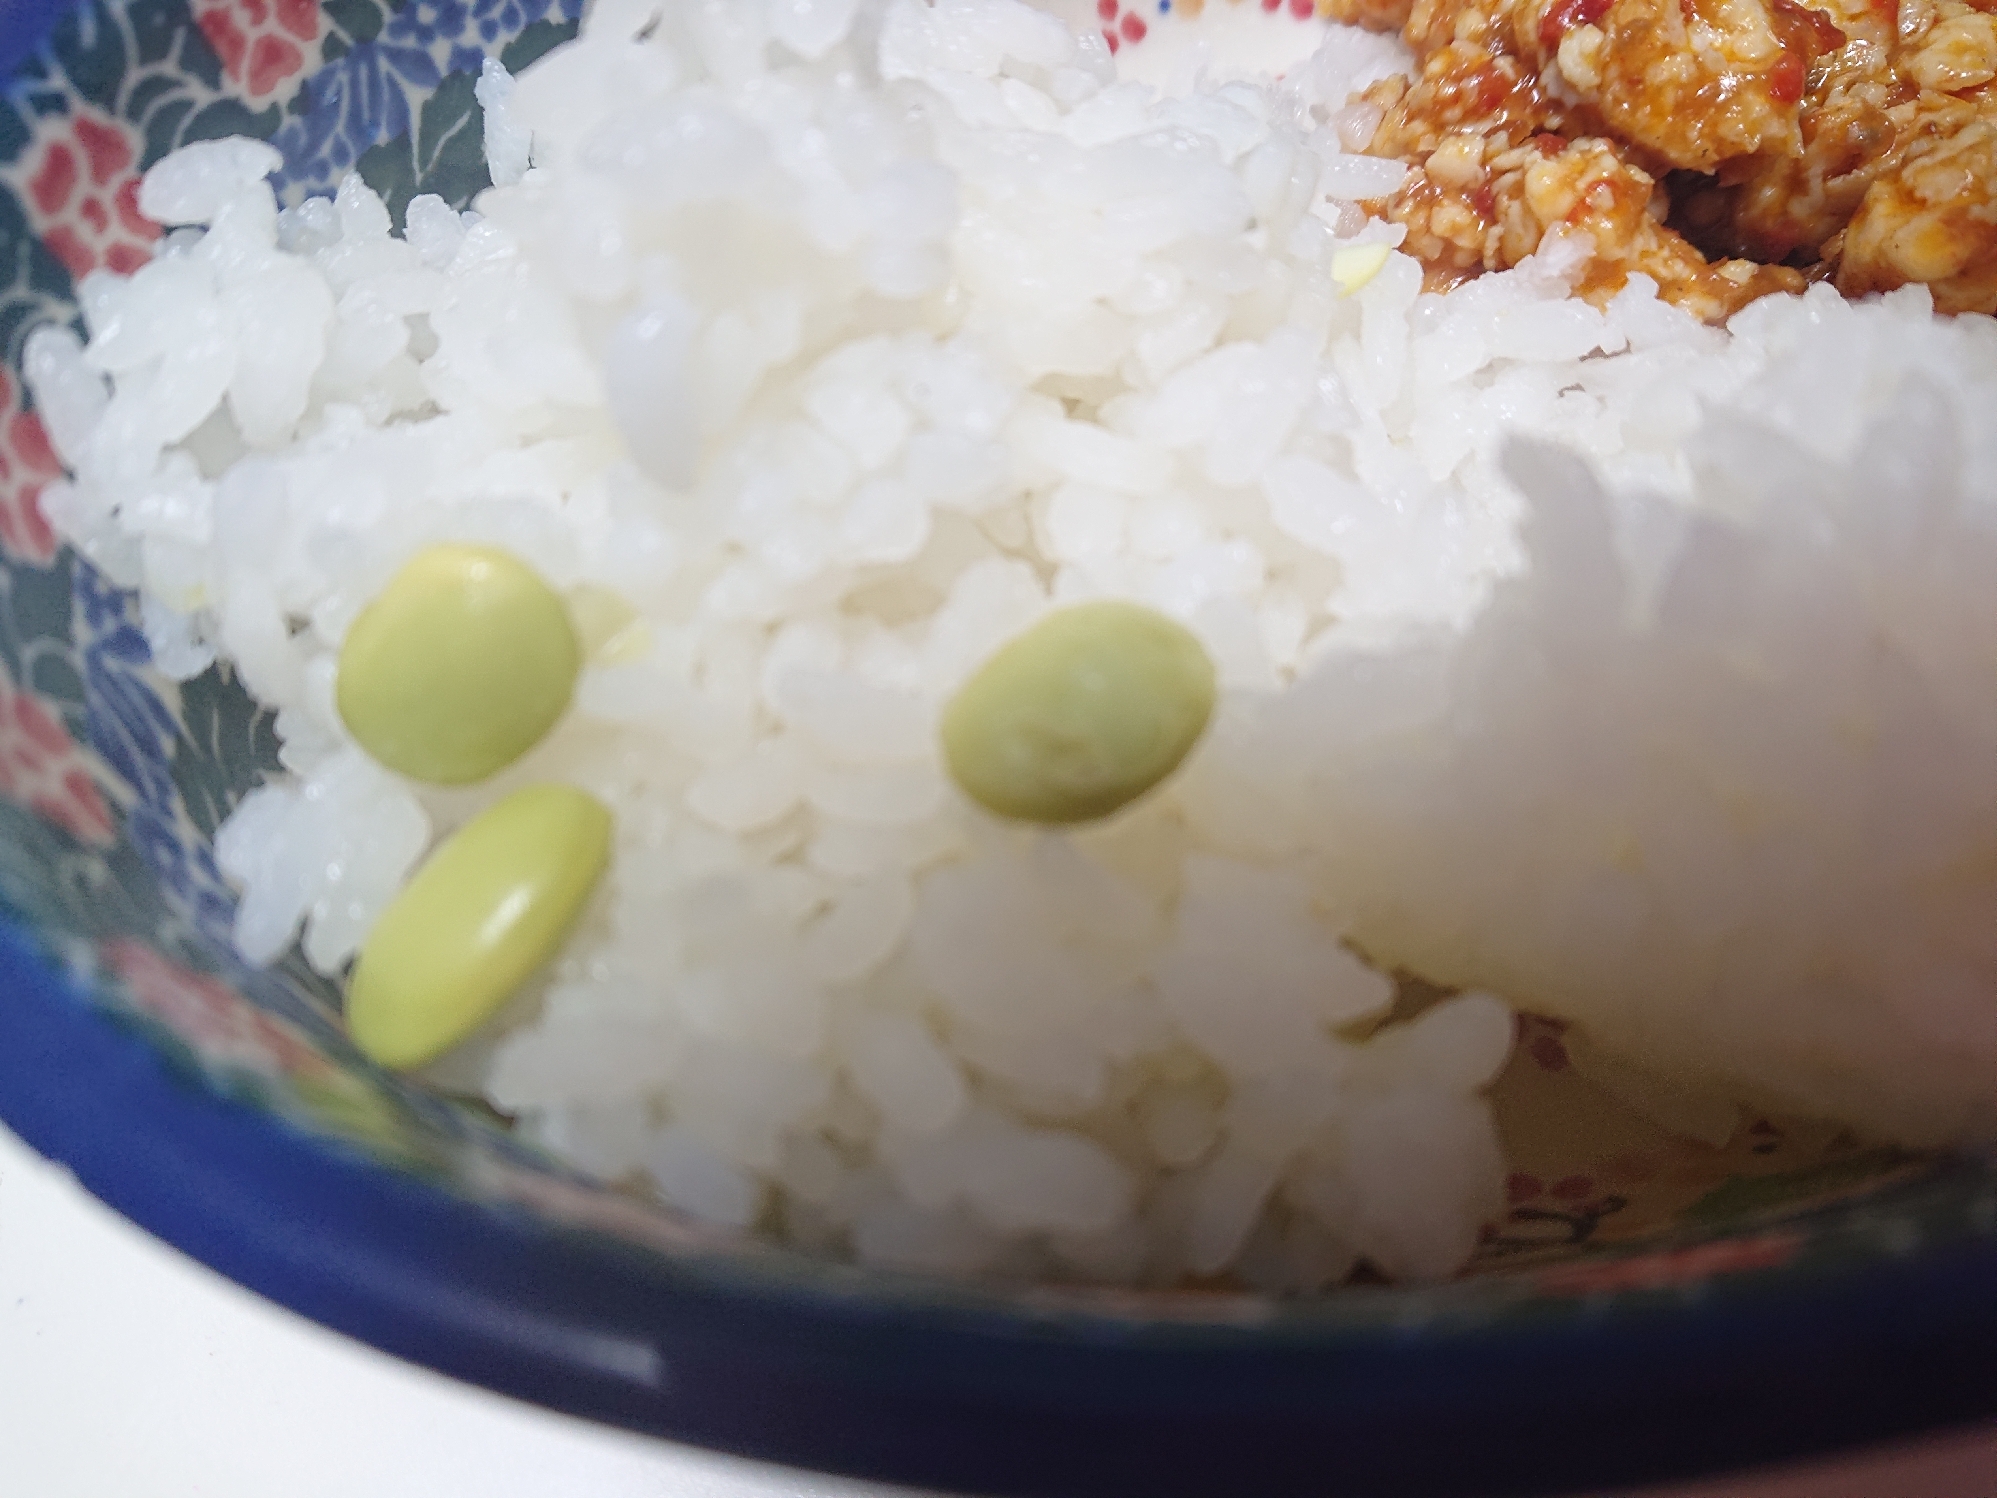 枝豆入り⭐鍋炊きご飯